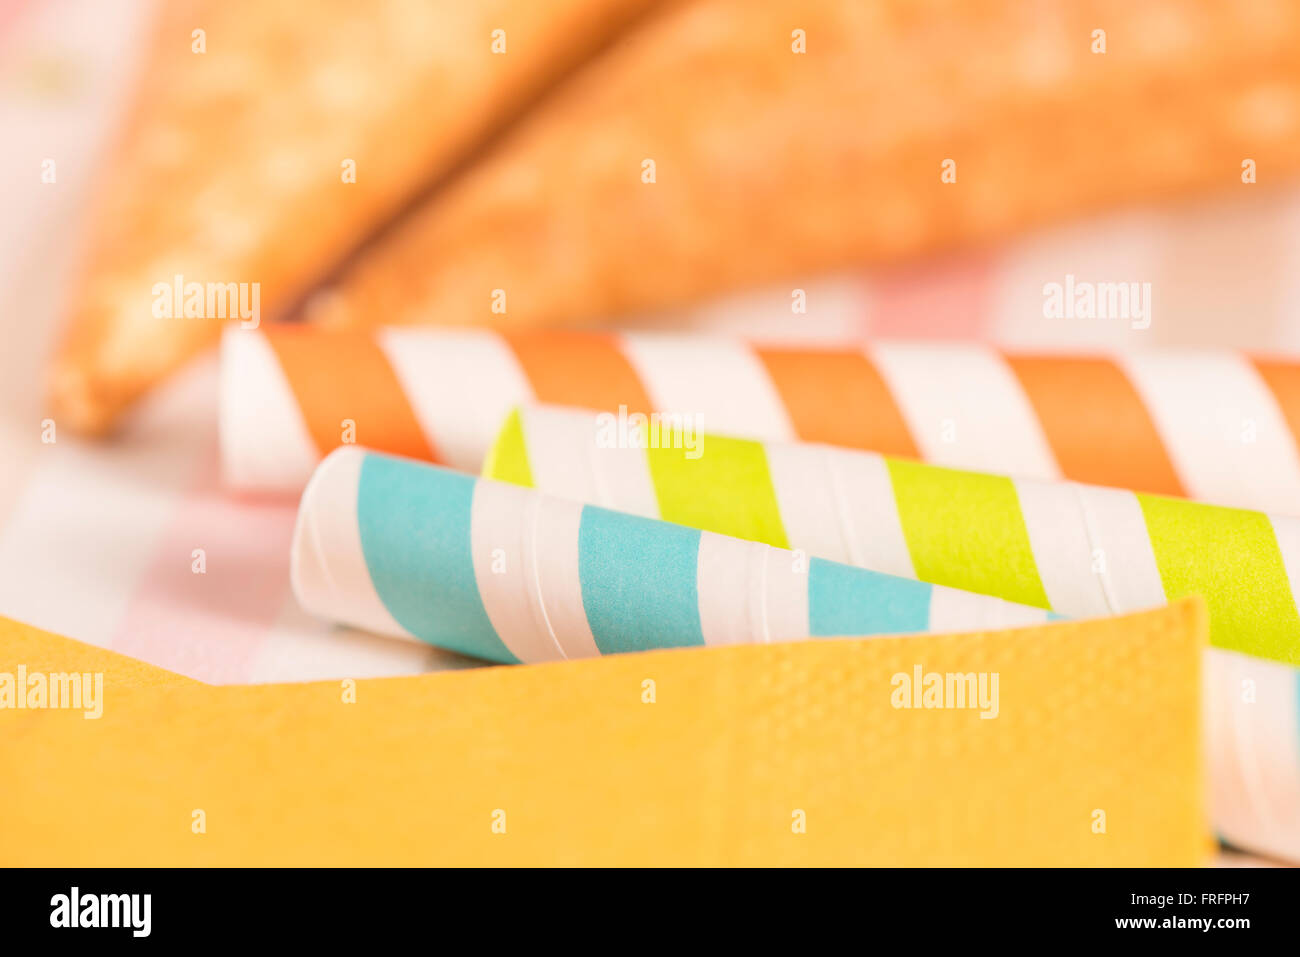 Striped cannucce in close up. Preparazione per la festa. Concetto di food styling o colorate decorazioni di compleanno. Foto Stock